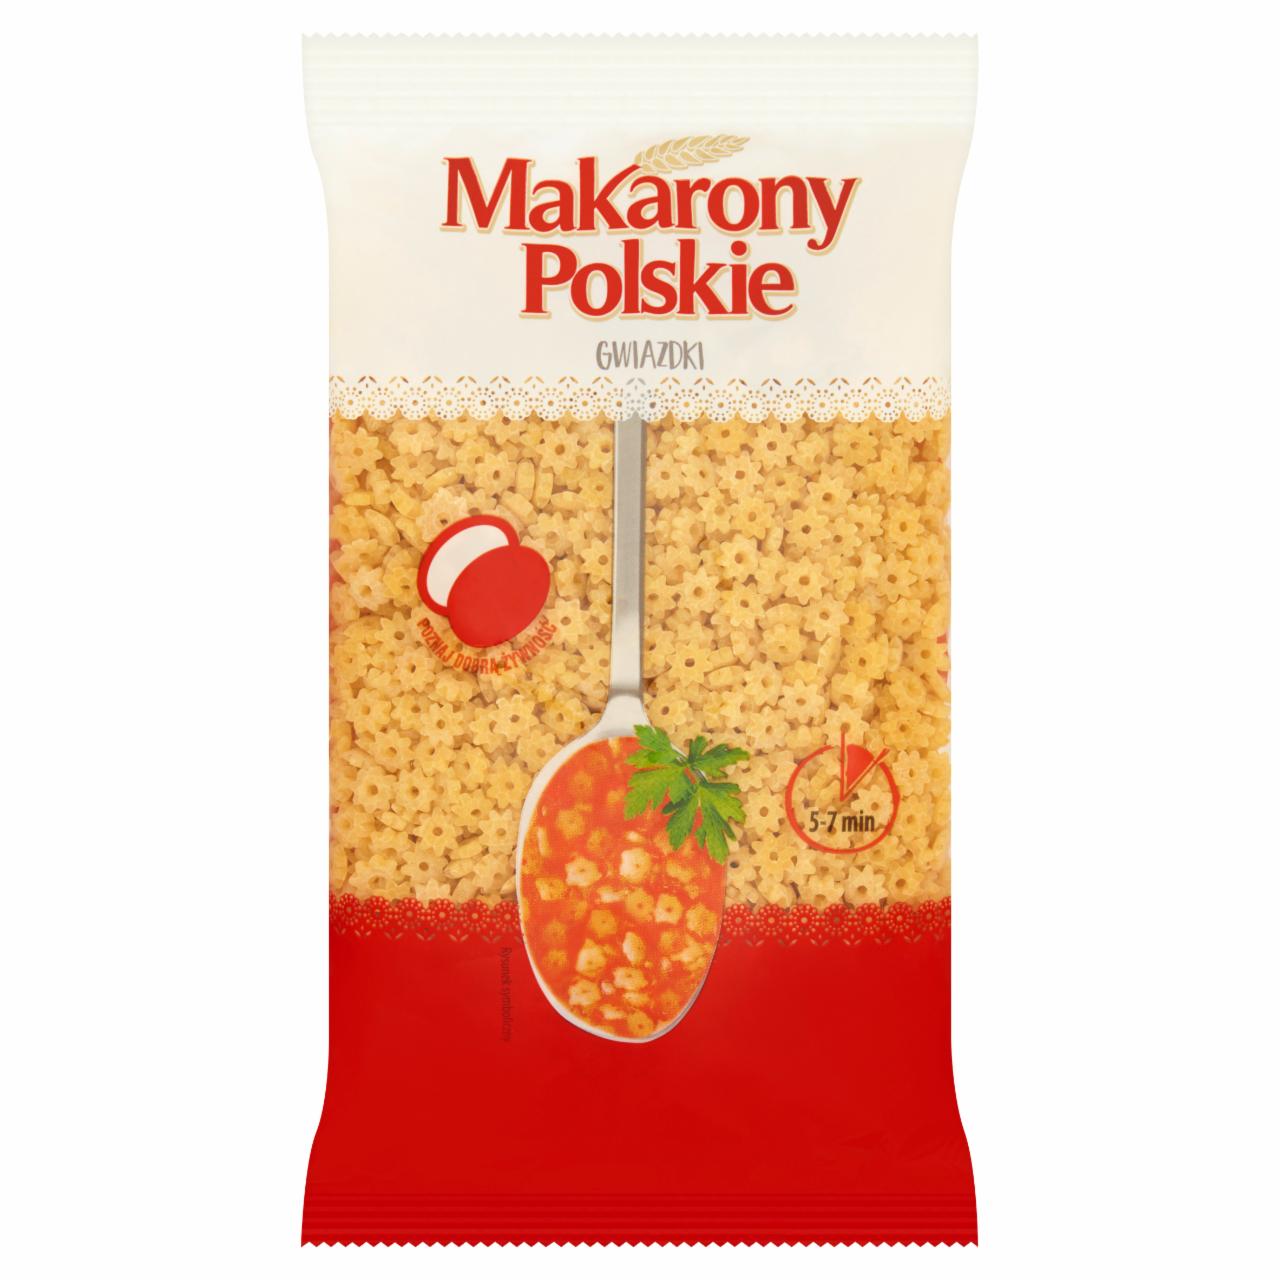 Zdjęcia - Makarony Polskie Makaron gwiazdki 250 g